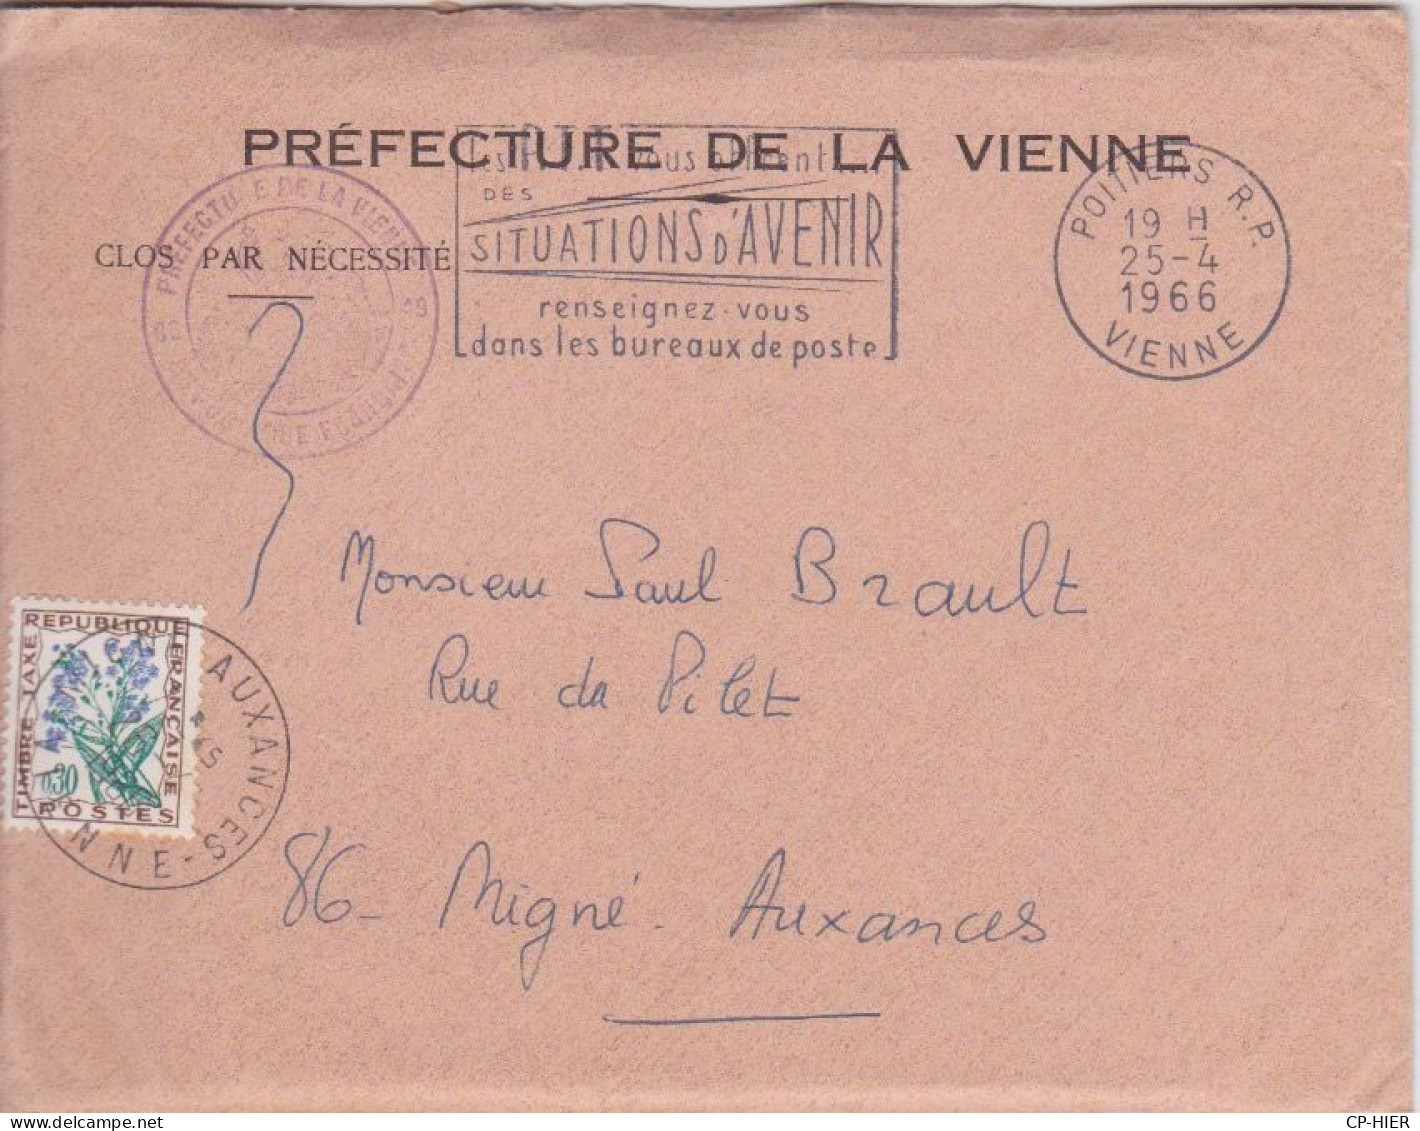 ENVELOPPE DE LA PREFECTURE DE LA VIENNE - TIMBRE TAXE + FLAMME SITUATIONS D'AVENIR BUREAUX DE POSTE - CACHET R.P. - 1961-....